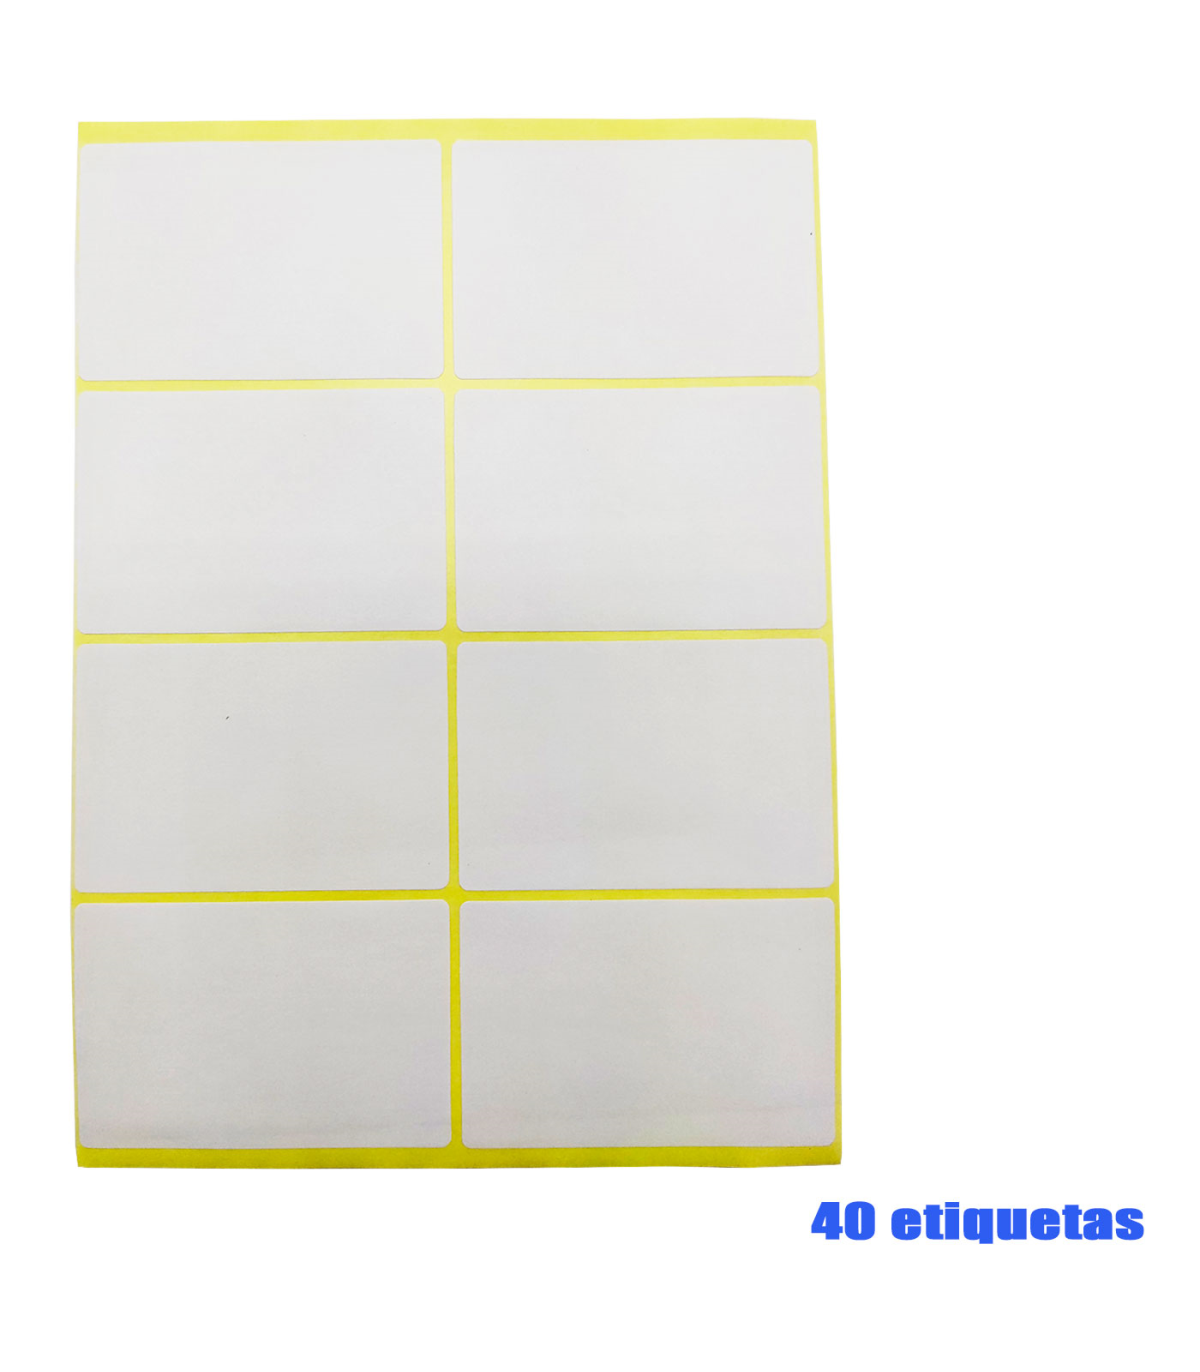 Tradineur - Pack de 40 etiquetas adhesivas blancas E11, pegatinas para objetos, hogar, oficina, 50 x 75 mm